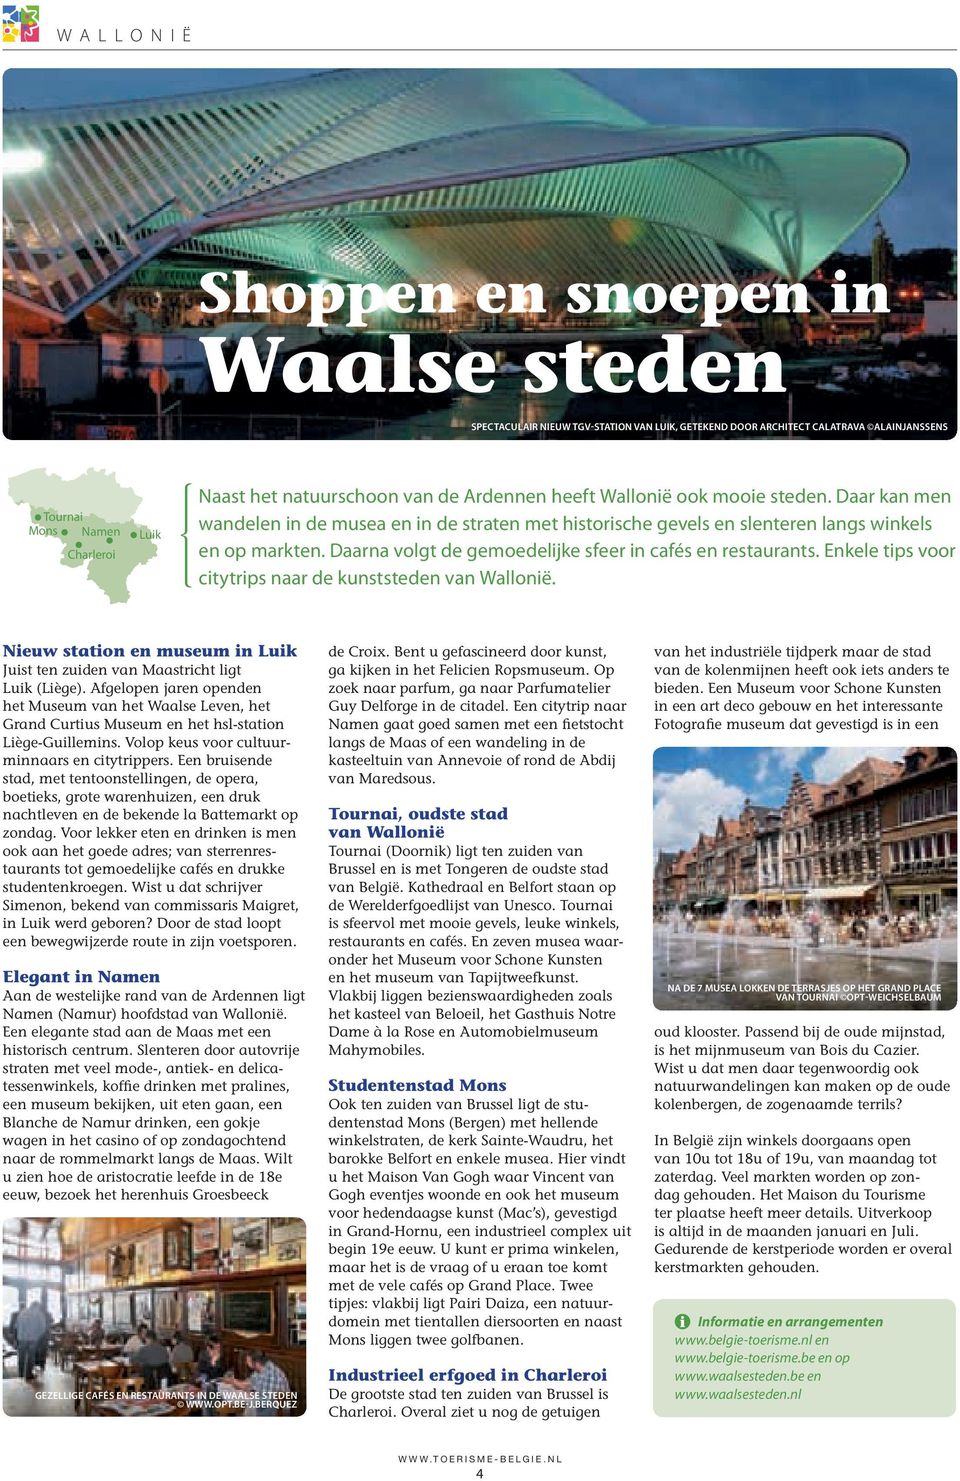 Daarna volgt de gemoedelijke sfeer in cafés en restaurants. Enkele tips voor citytrips naar de kunststeden van Wallonië.